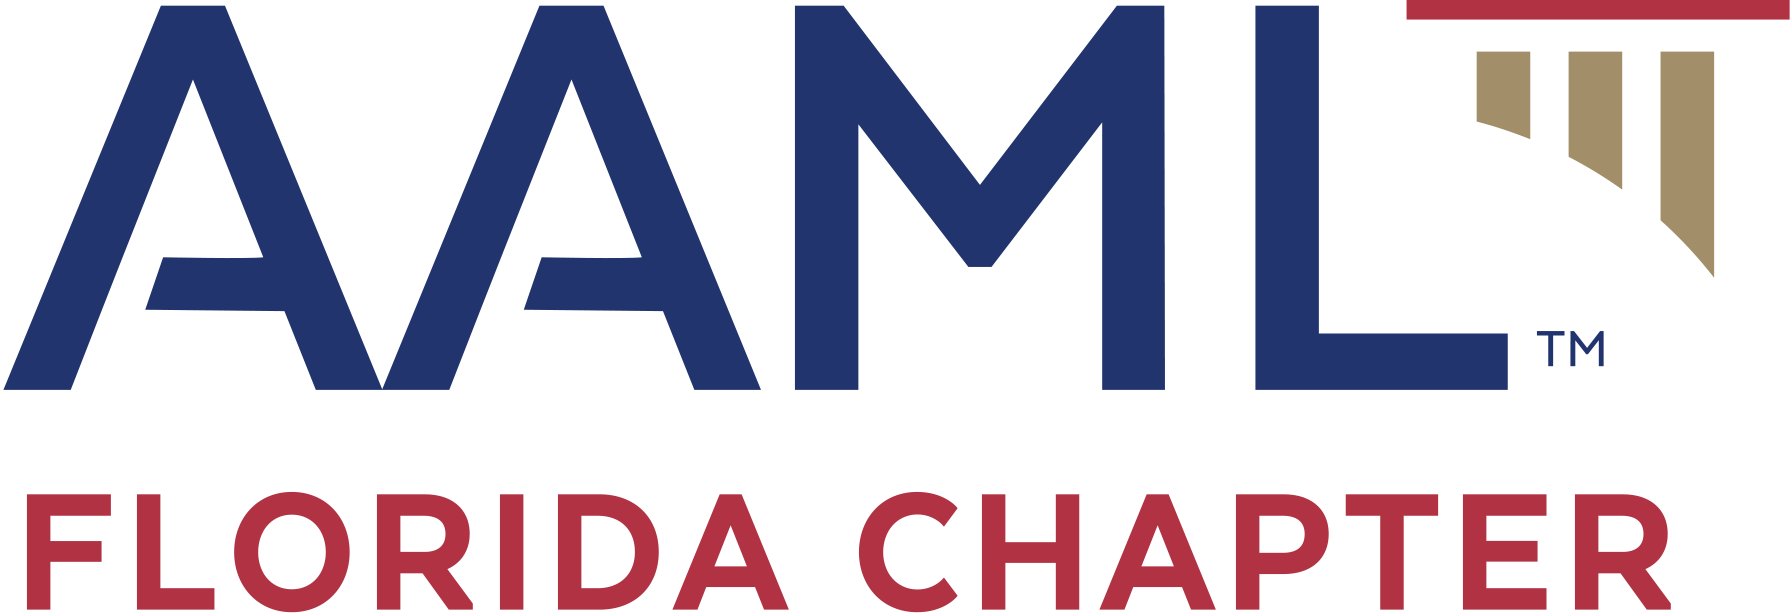 AAML Florida Chapter